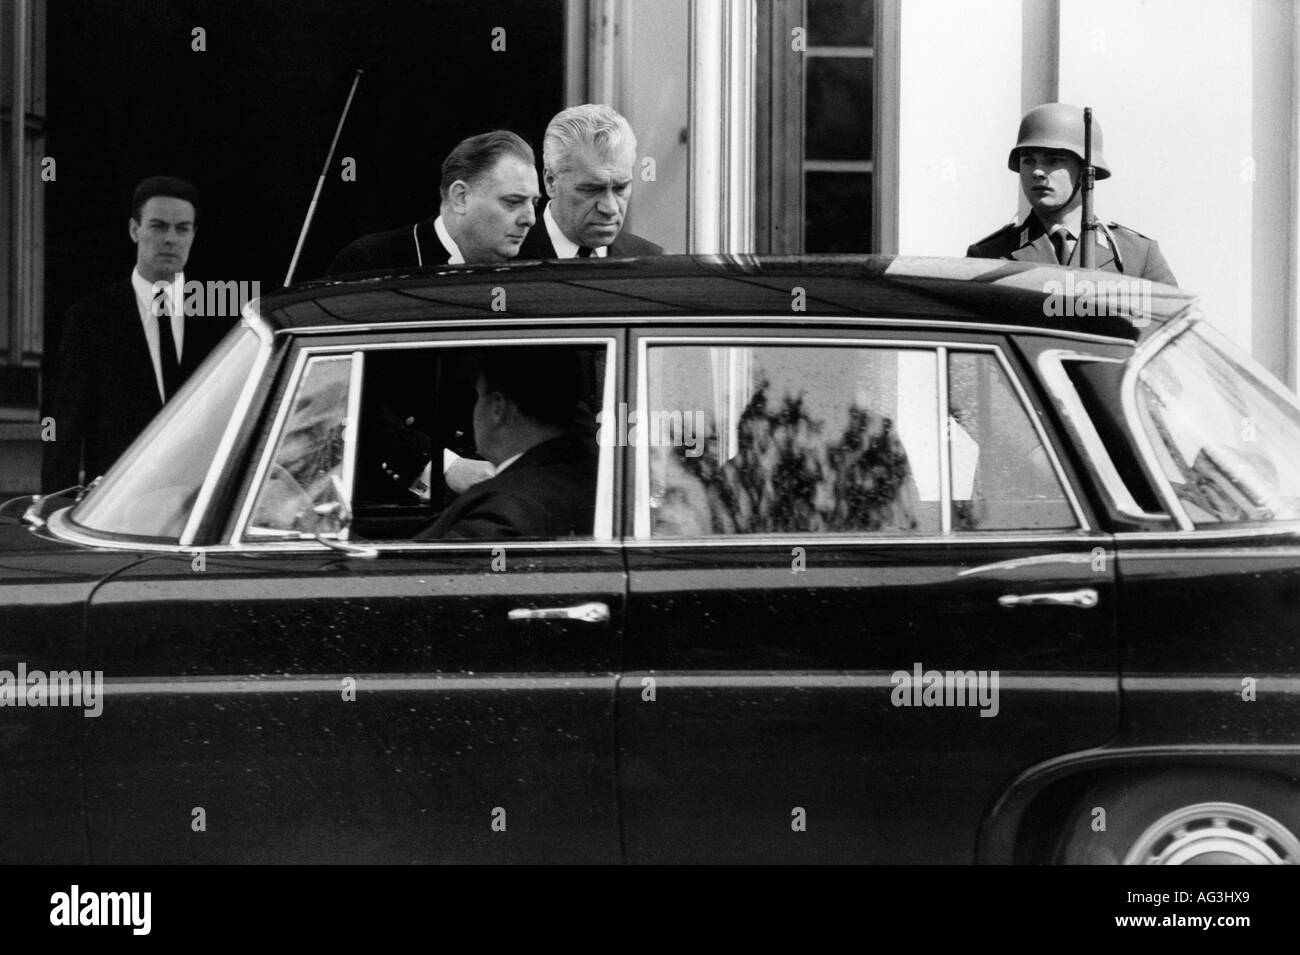 Zarapkin, Semjon Konstantinowitsch, * 4.6.1906, diplomatico sovietico, 1966 - 1971 ambasciatore dell'Unione Sovietica in Germania, visita di condoglianze per i morti di Konrad Adenauer, 1967, Foto Stock